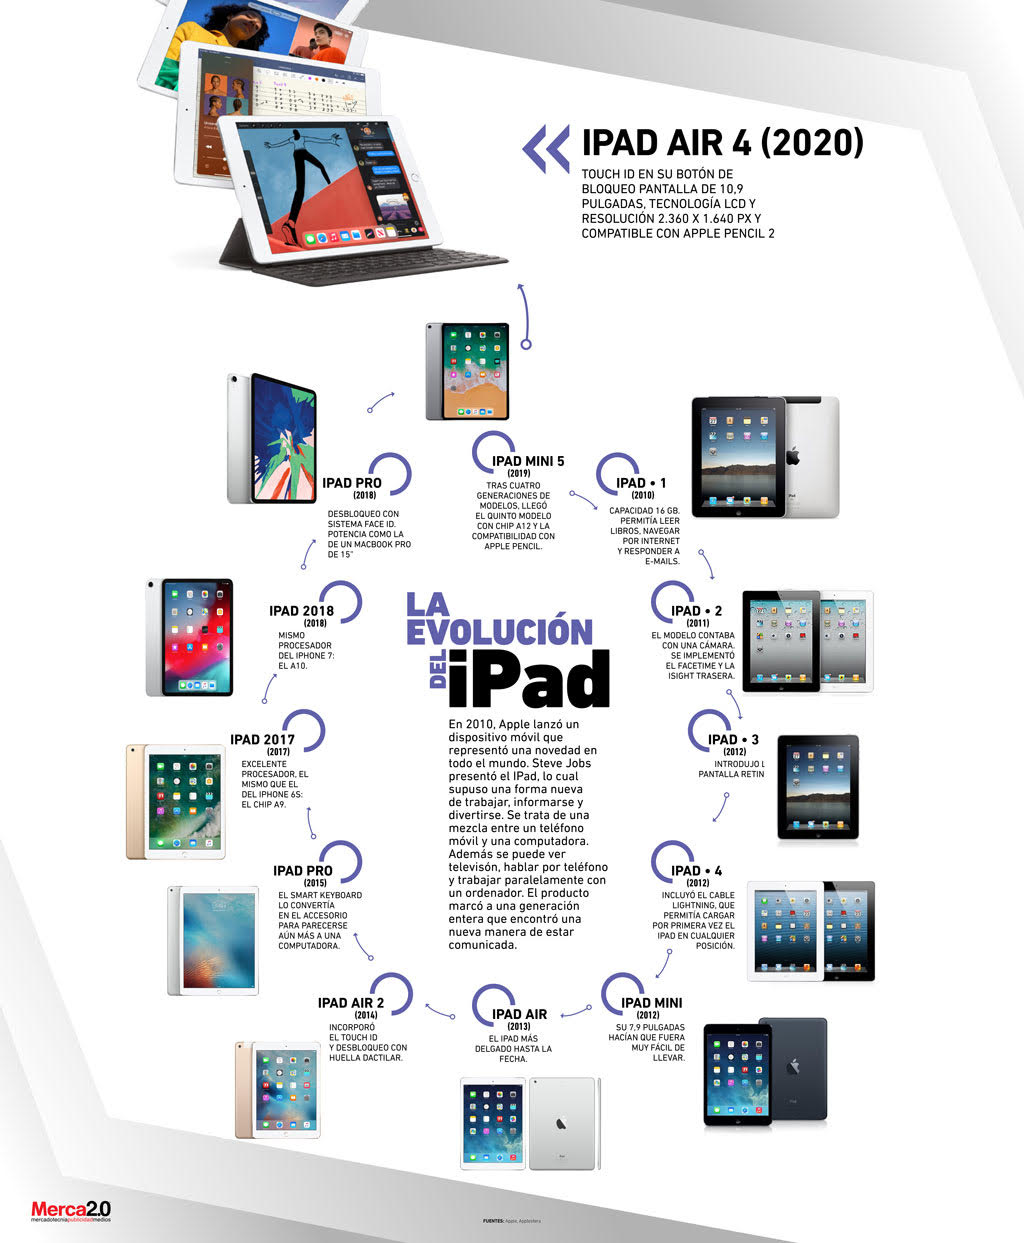 Las primeras Reviews del “Nuevo iPad” han llegado